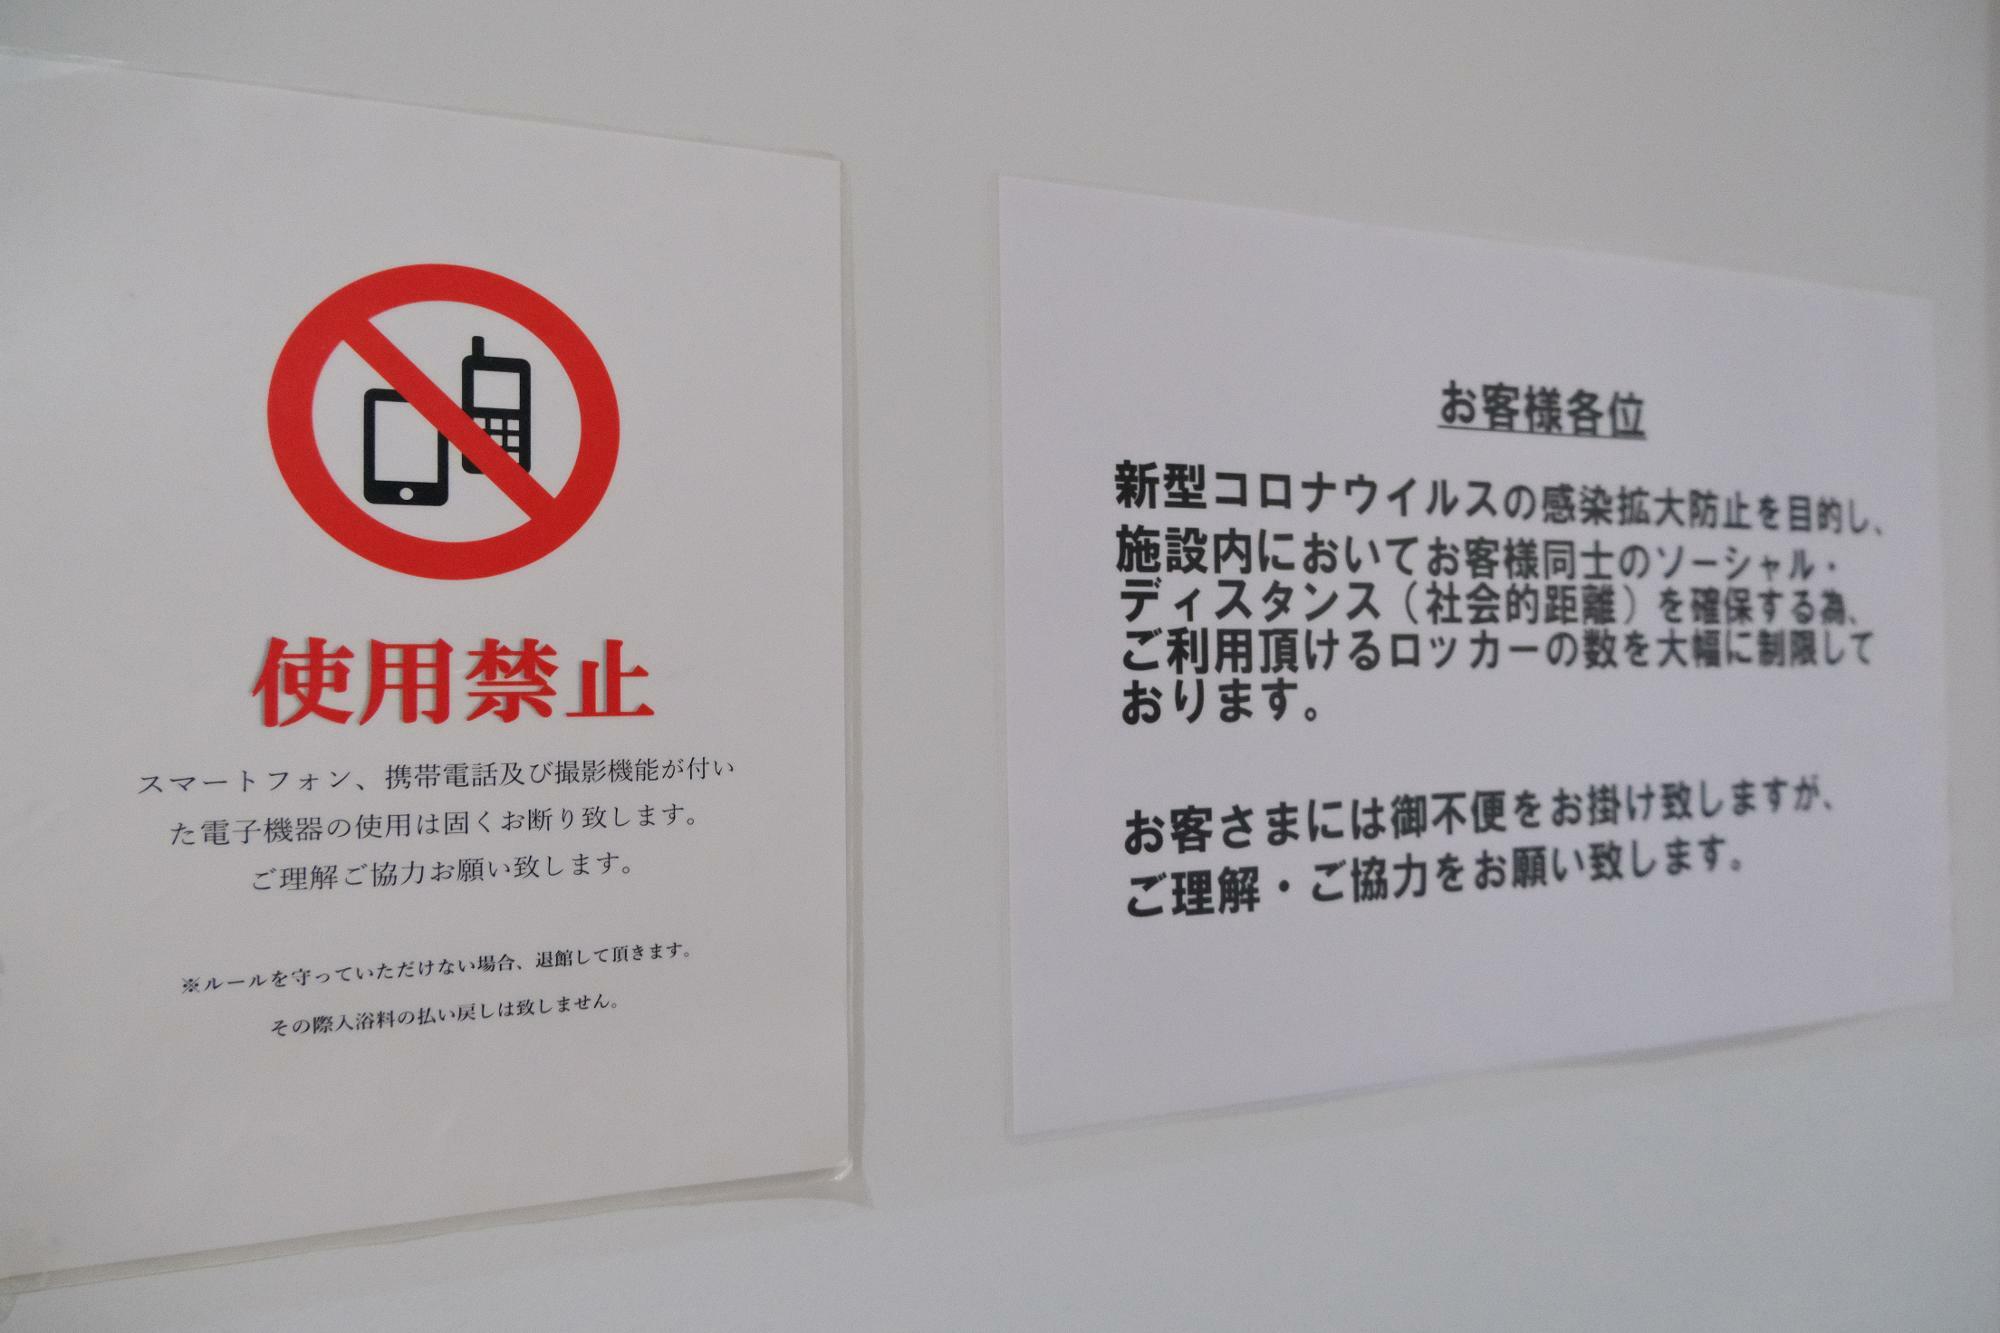 スマートフォン、携帯電話などの撮影機能が付いた電子機器の使用は禁止です